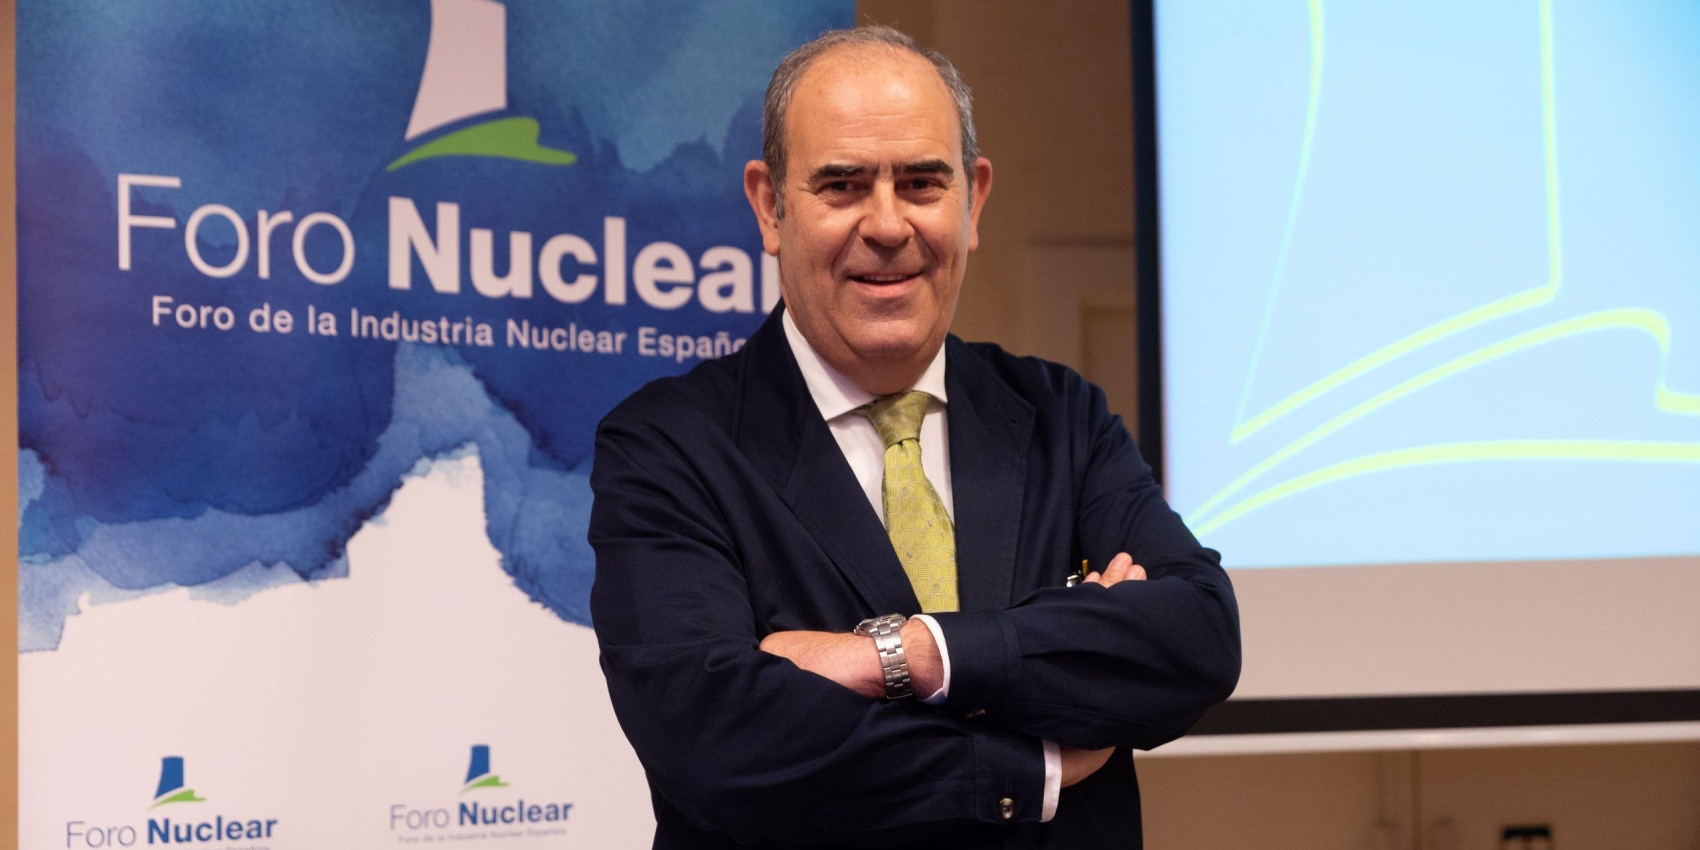 Ignacio Araluce, directeur de la fédération espagnole des centrales nucléaires Foro Nuclear